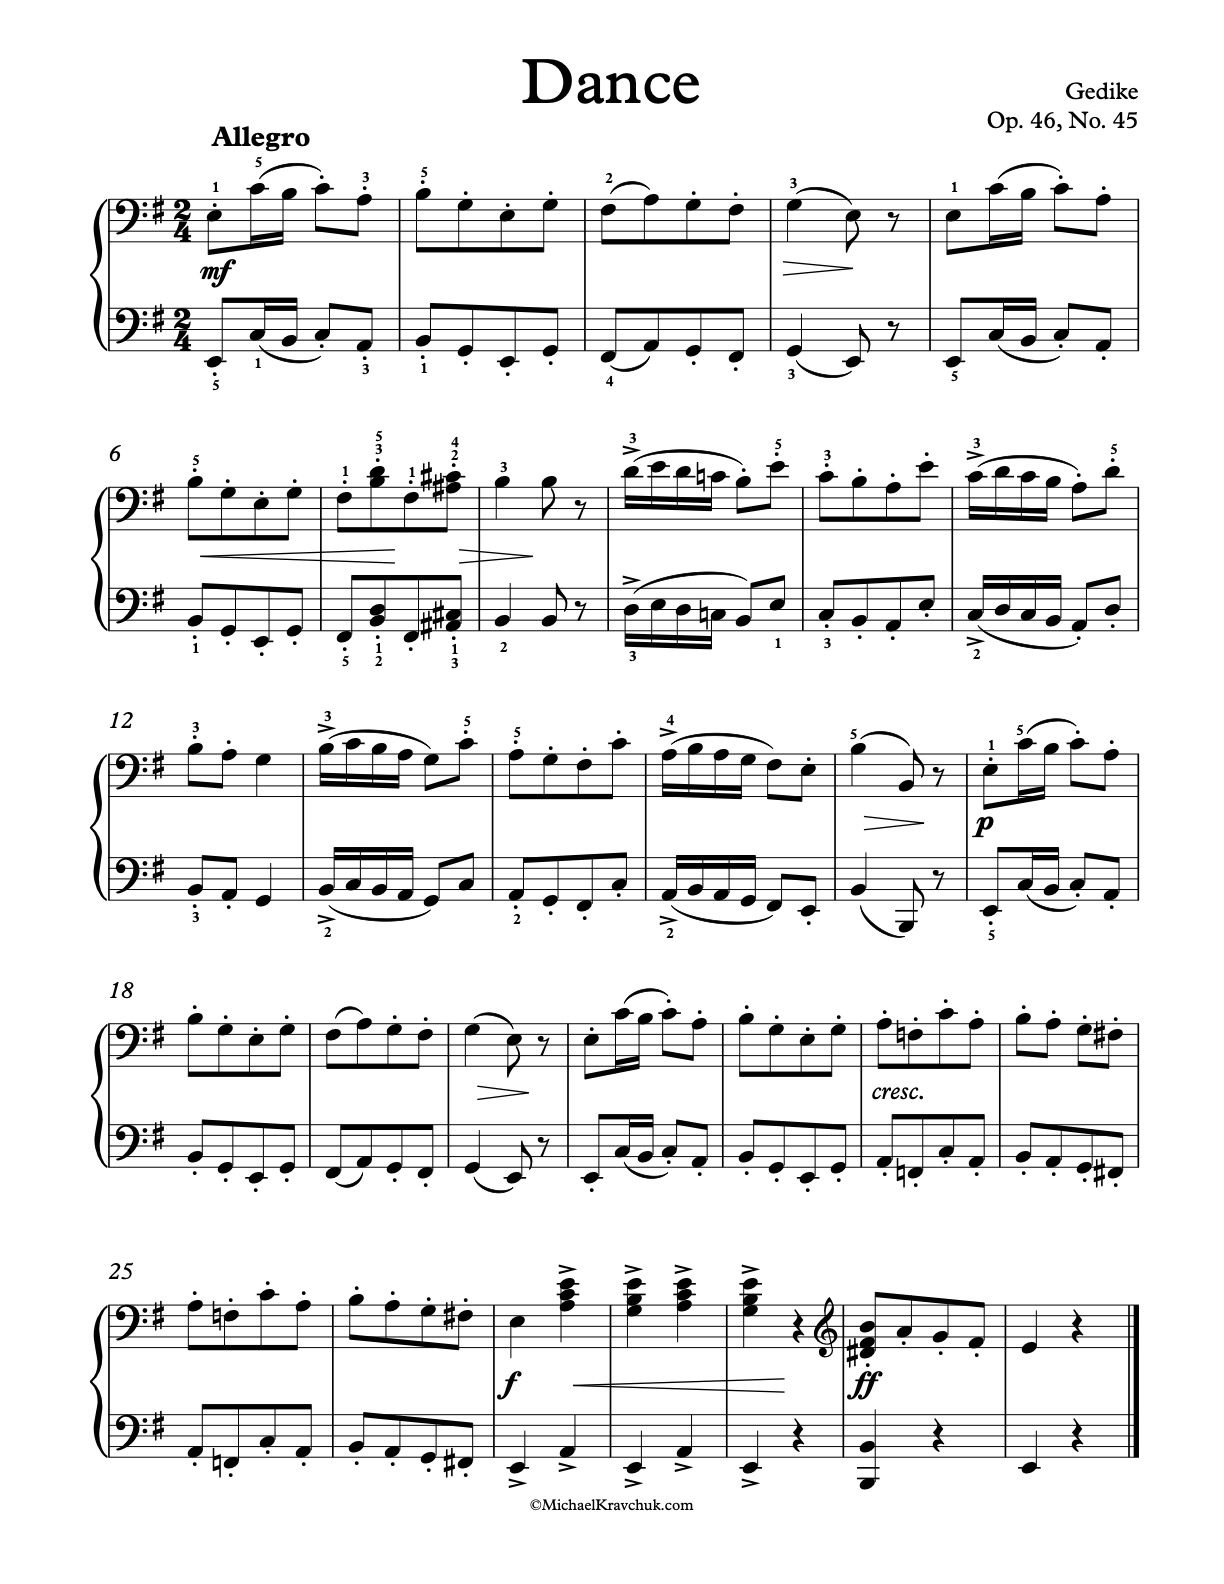 Op. 46, No. 45 Piano Sheet Music